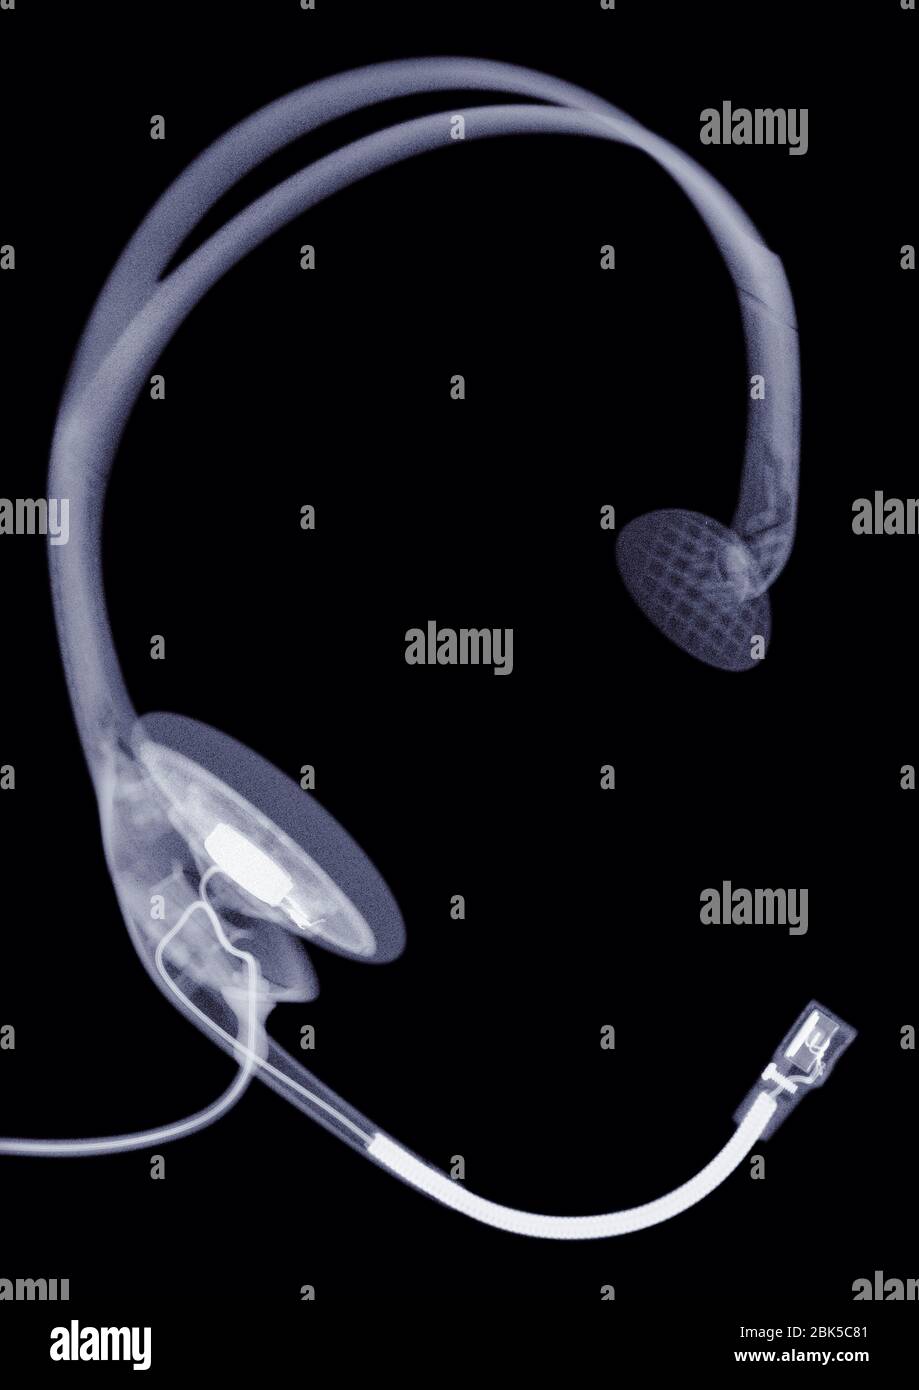 Headset, X-ray. Stock Photo